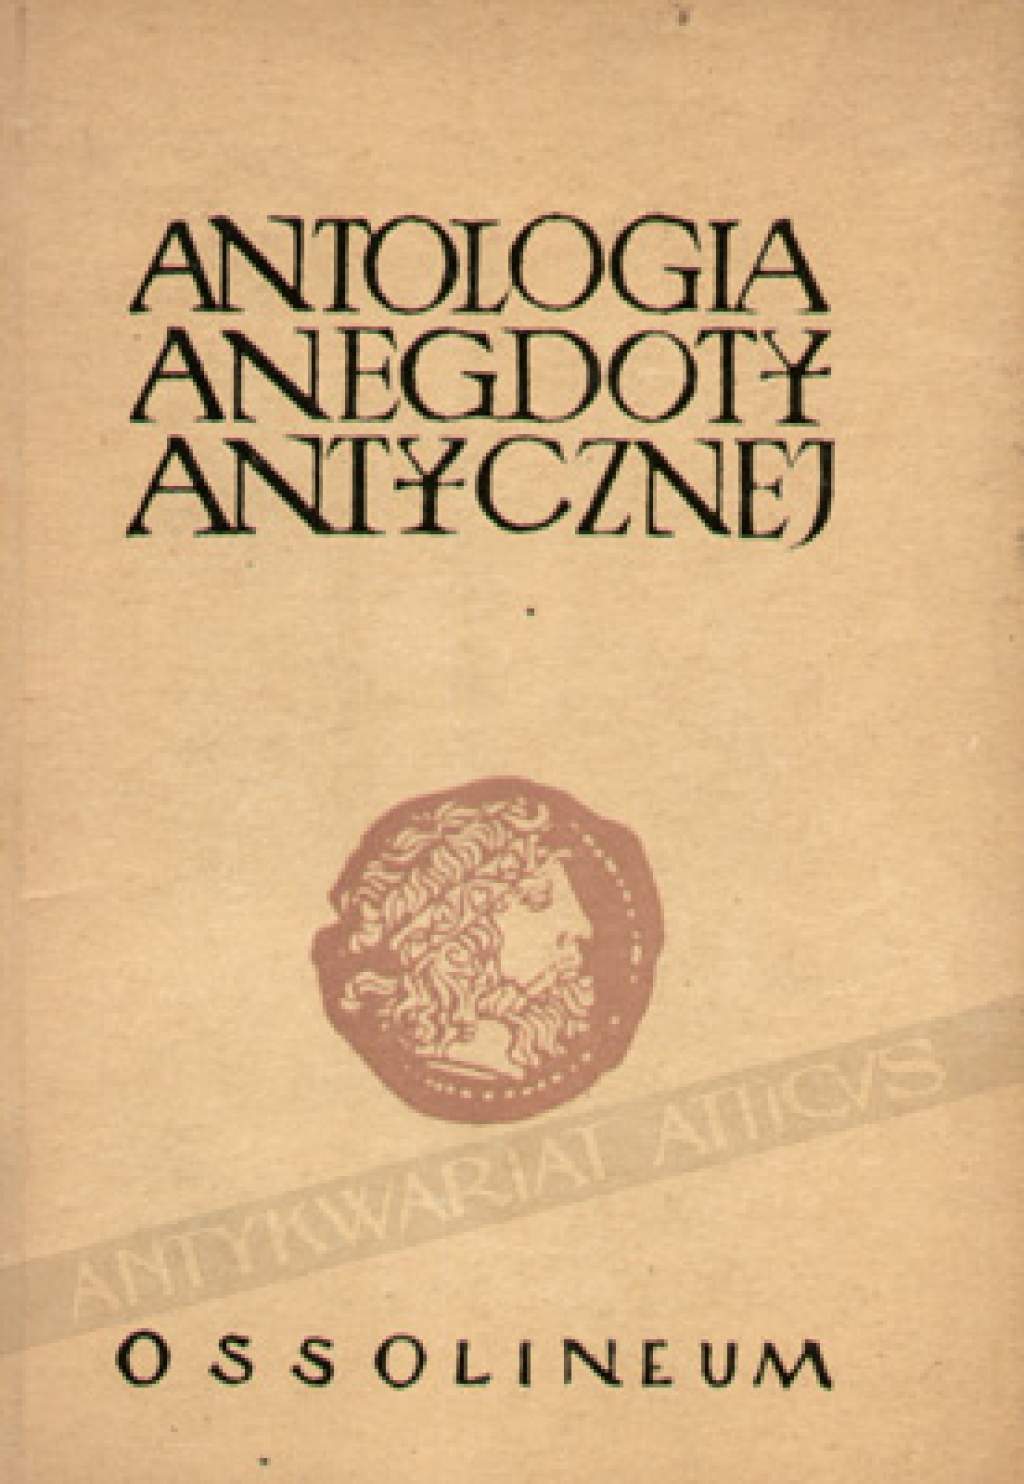 Antologia anegdoty antycznej. Teraz powtórnie wydane historyjki budujące i niebudujące z autorów greckich i rzymskich